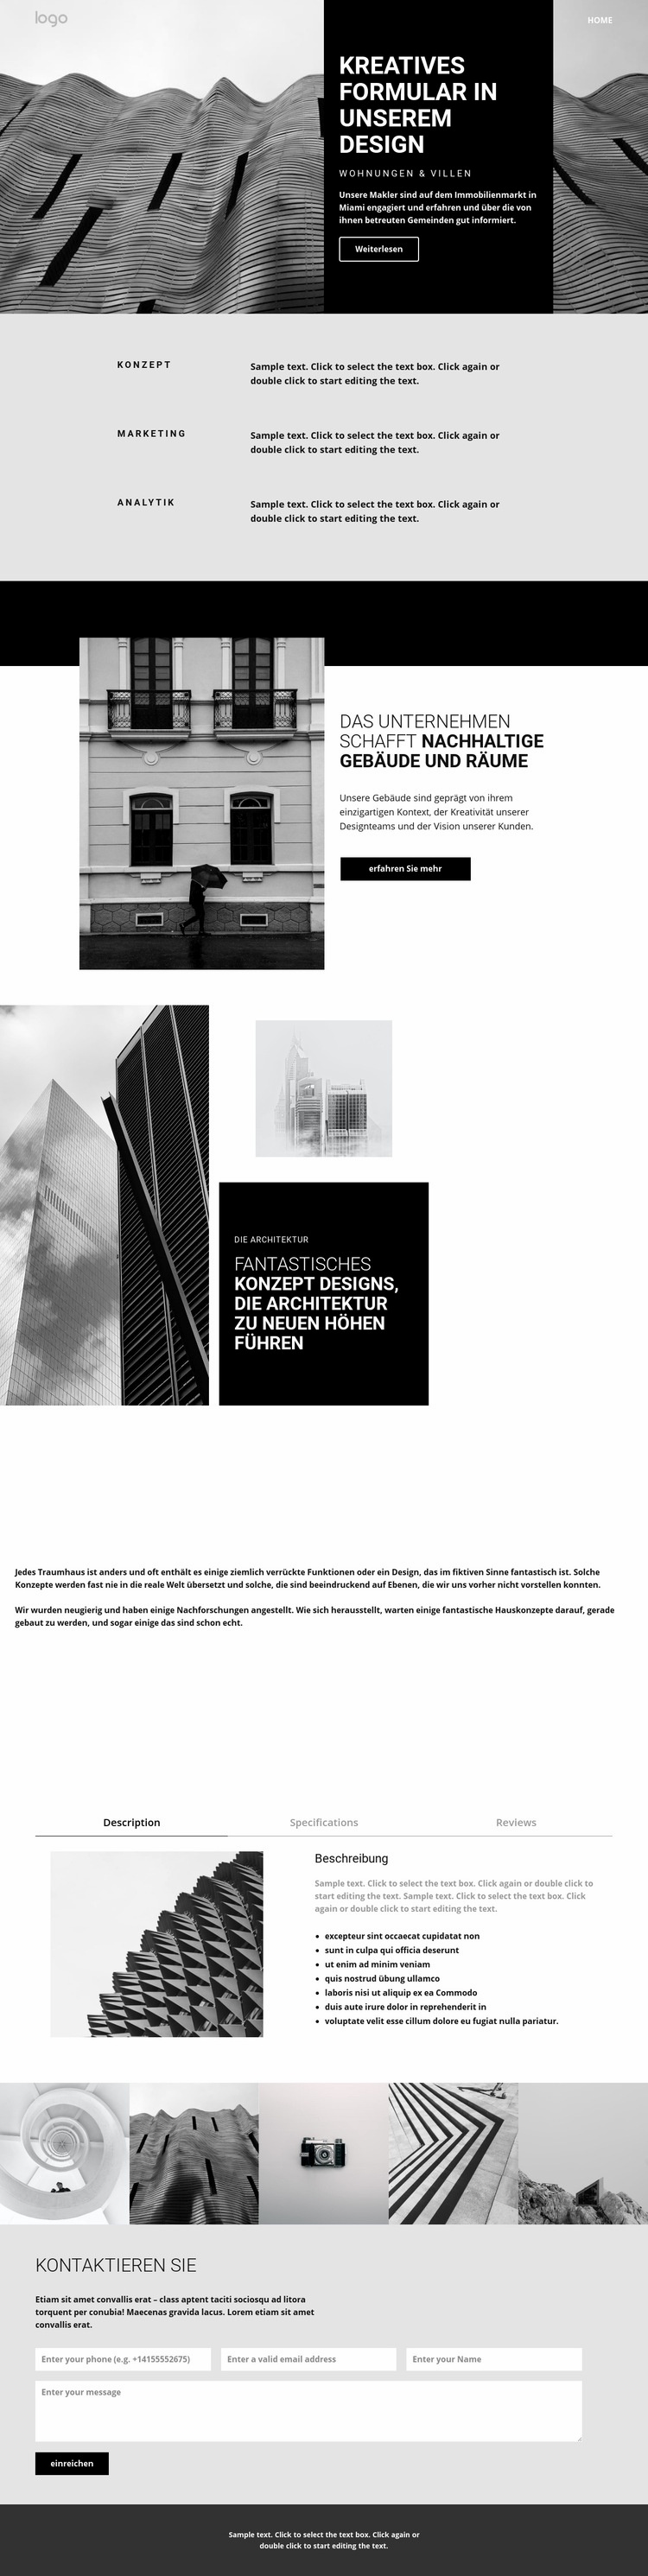 Kreative Konzeptarchitektur Website design